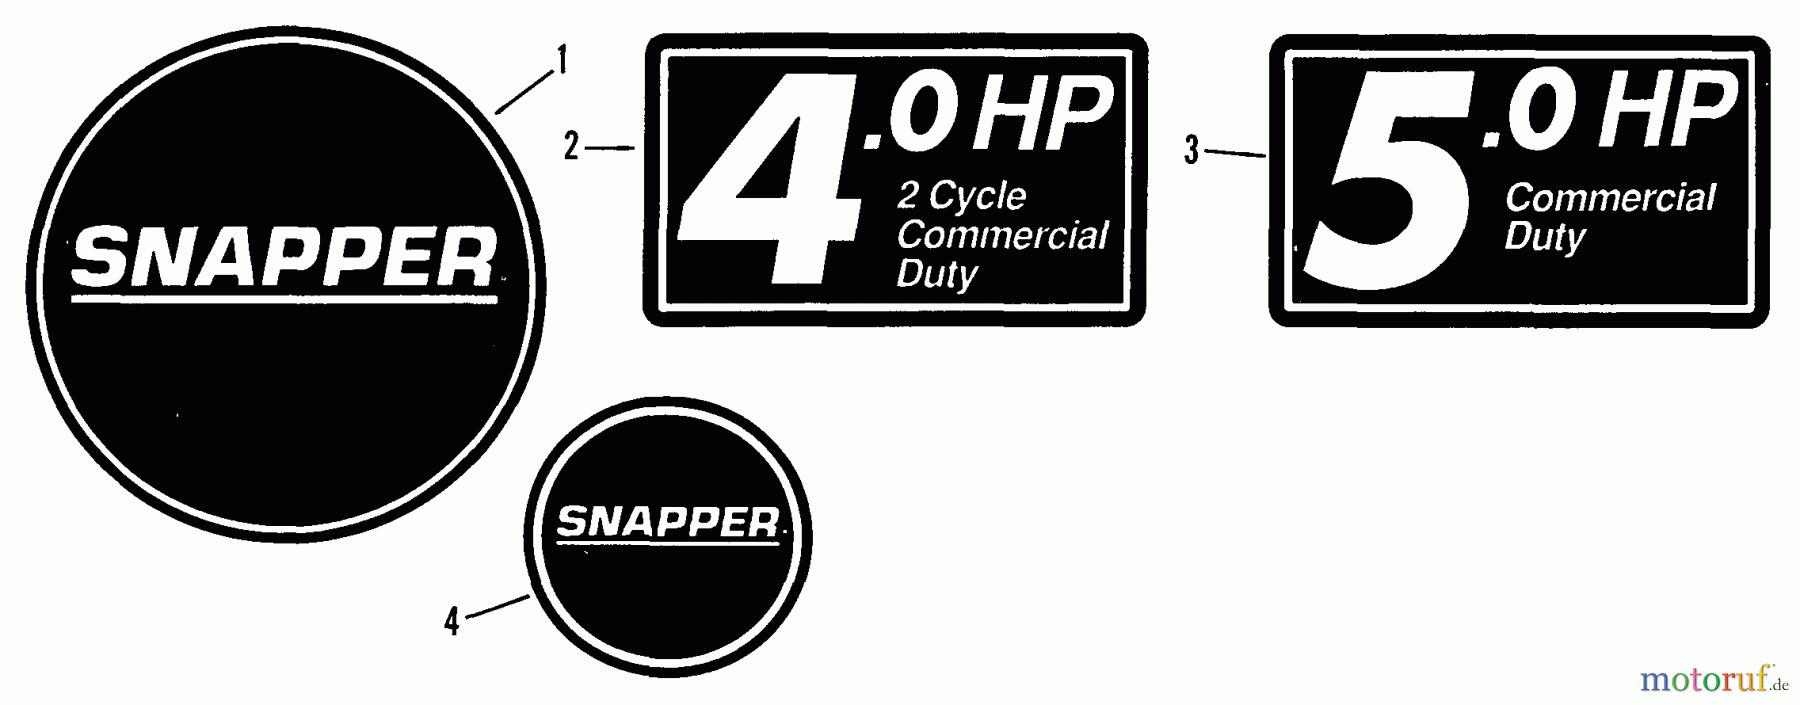  Snapper Rasenmäher CVP21507B - Snapper 21